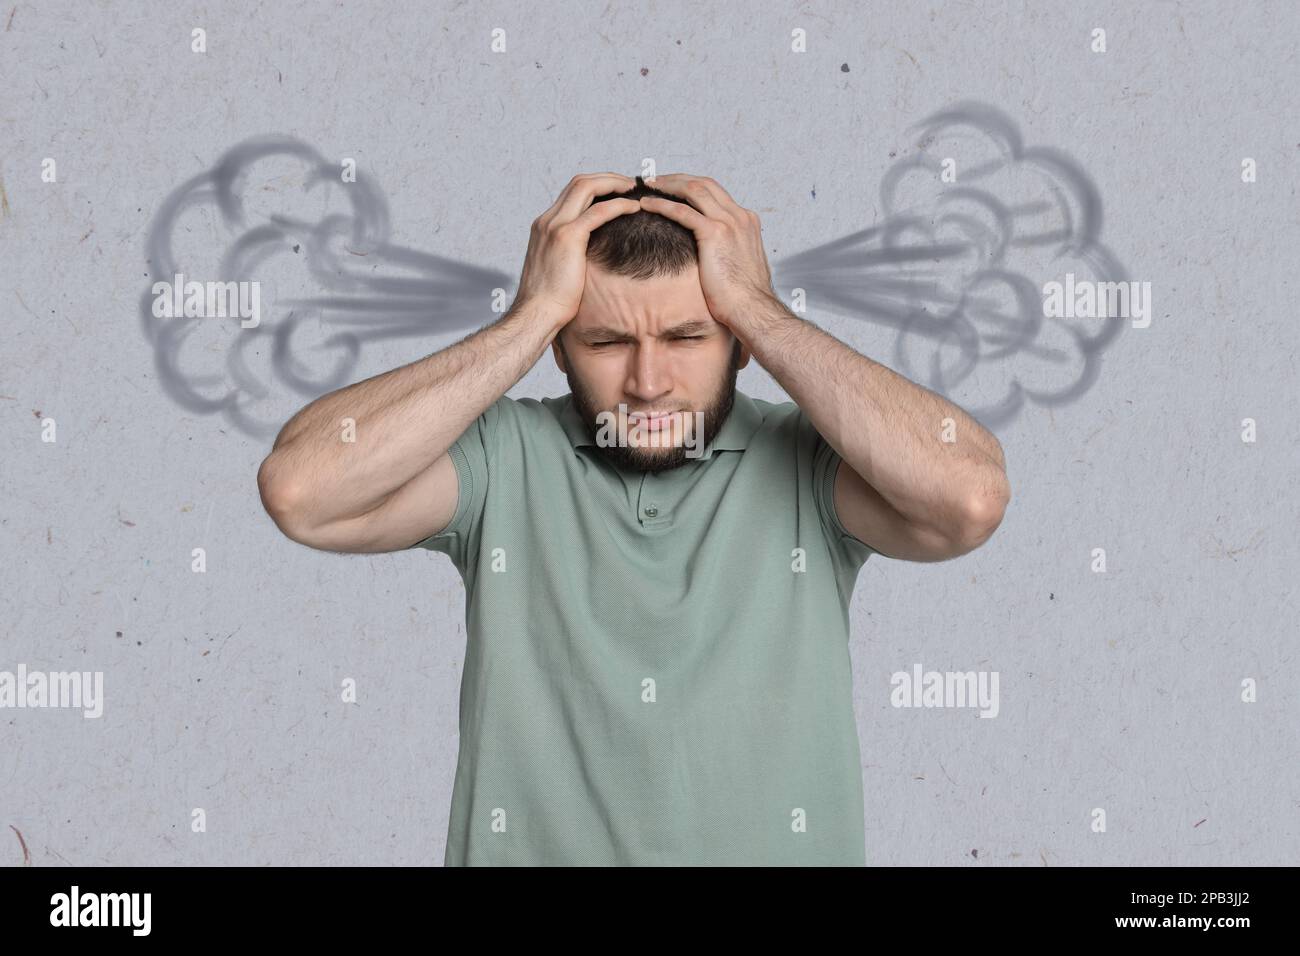 Uomo con mal di testa su sfondo grigio chiaro. Illustrazione del vapore che rappresenta un dolore grave Foto Stock